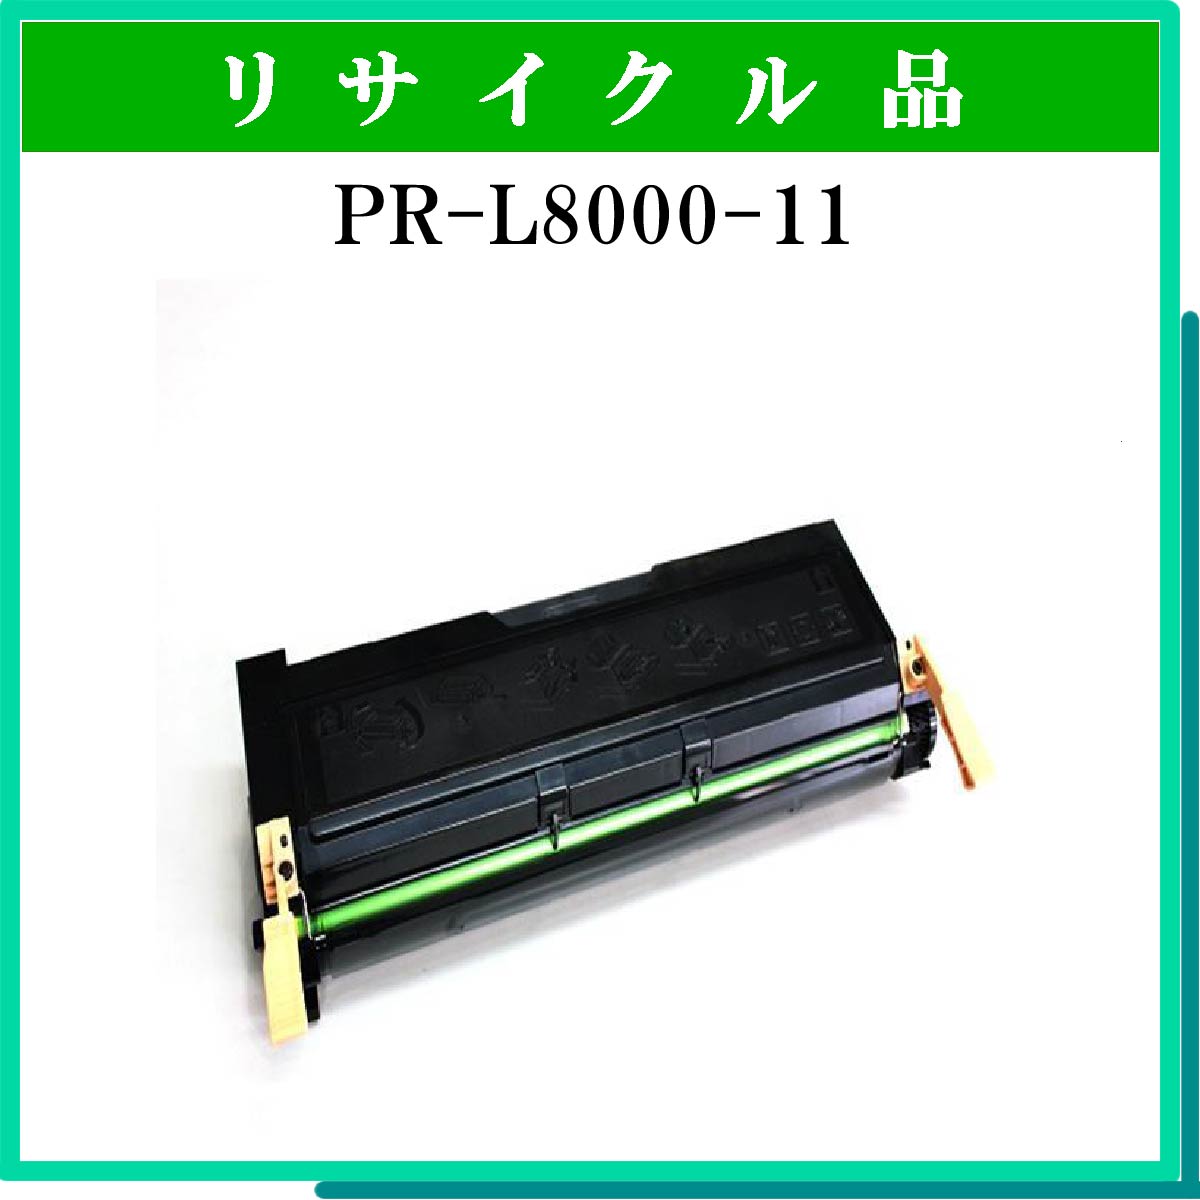 PR-L8000-11